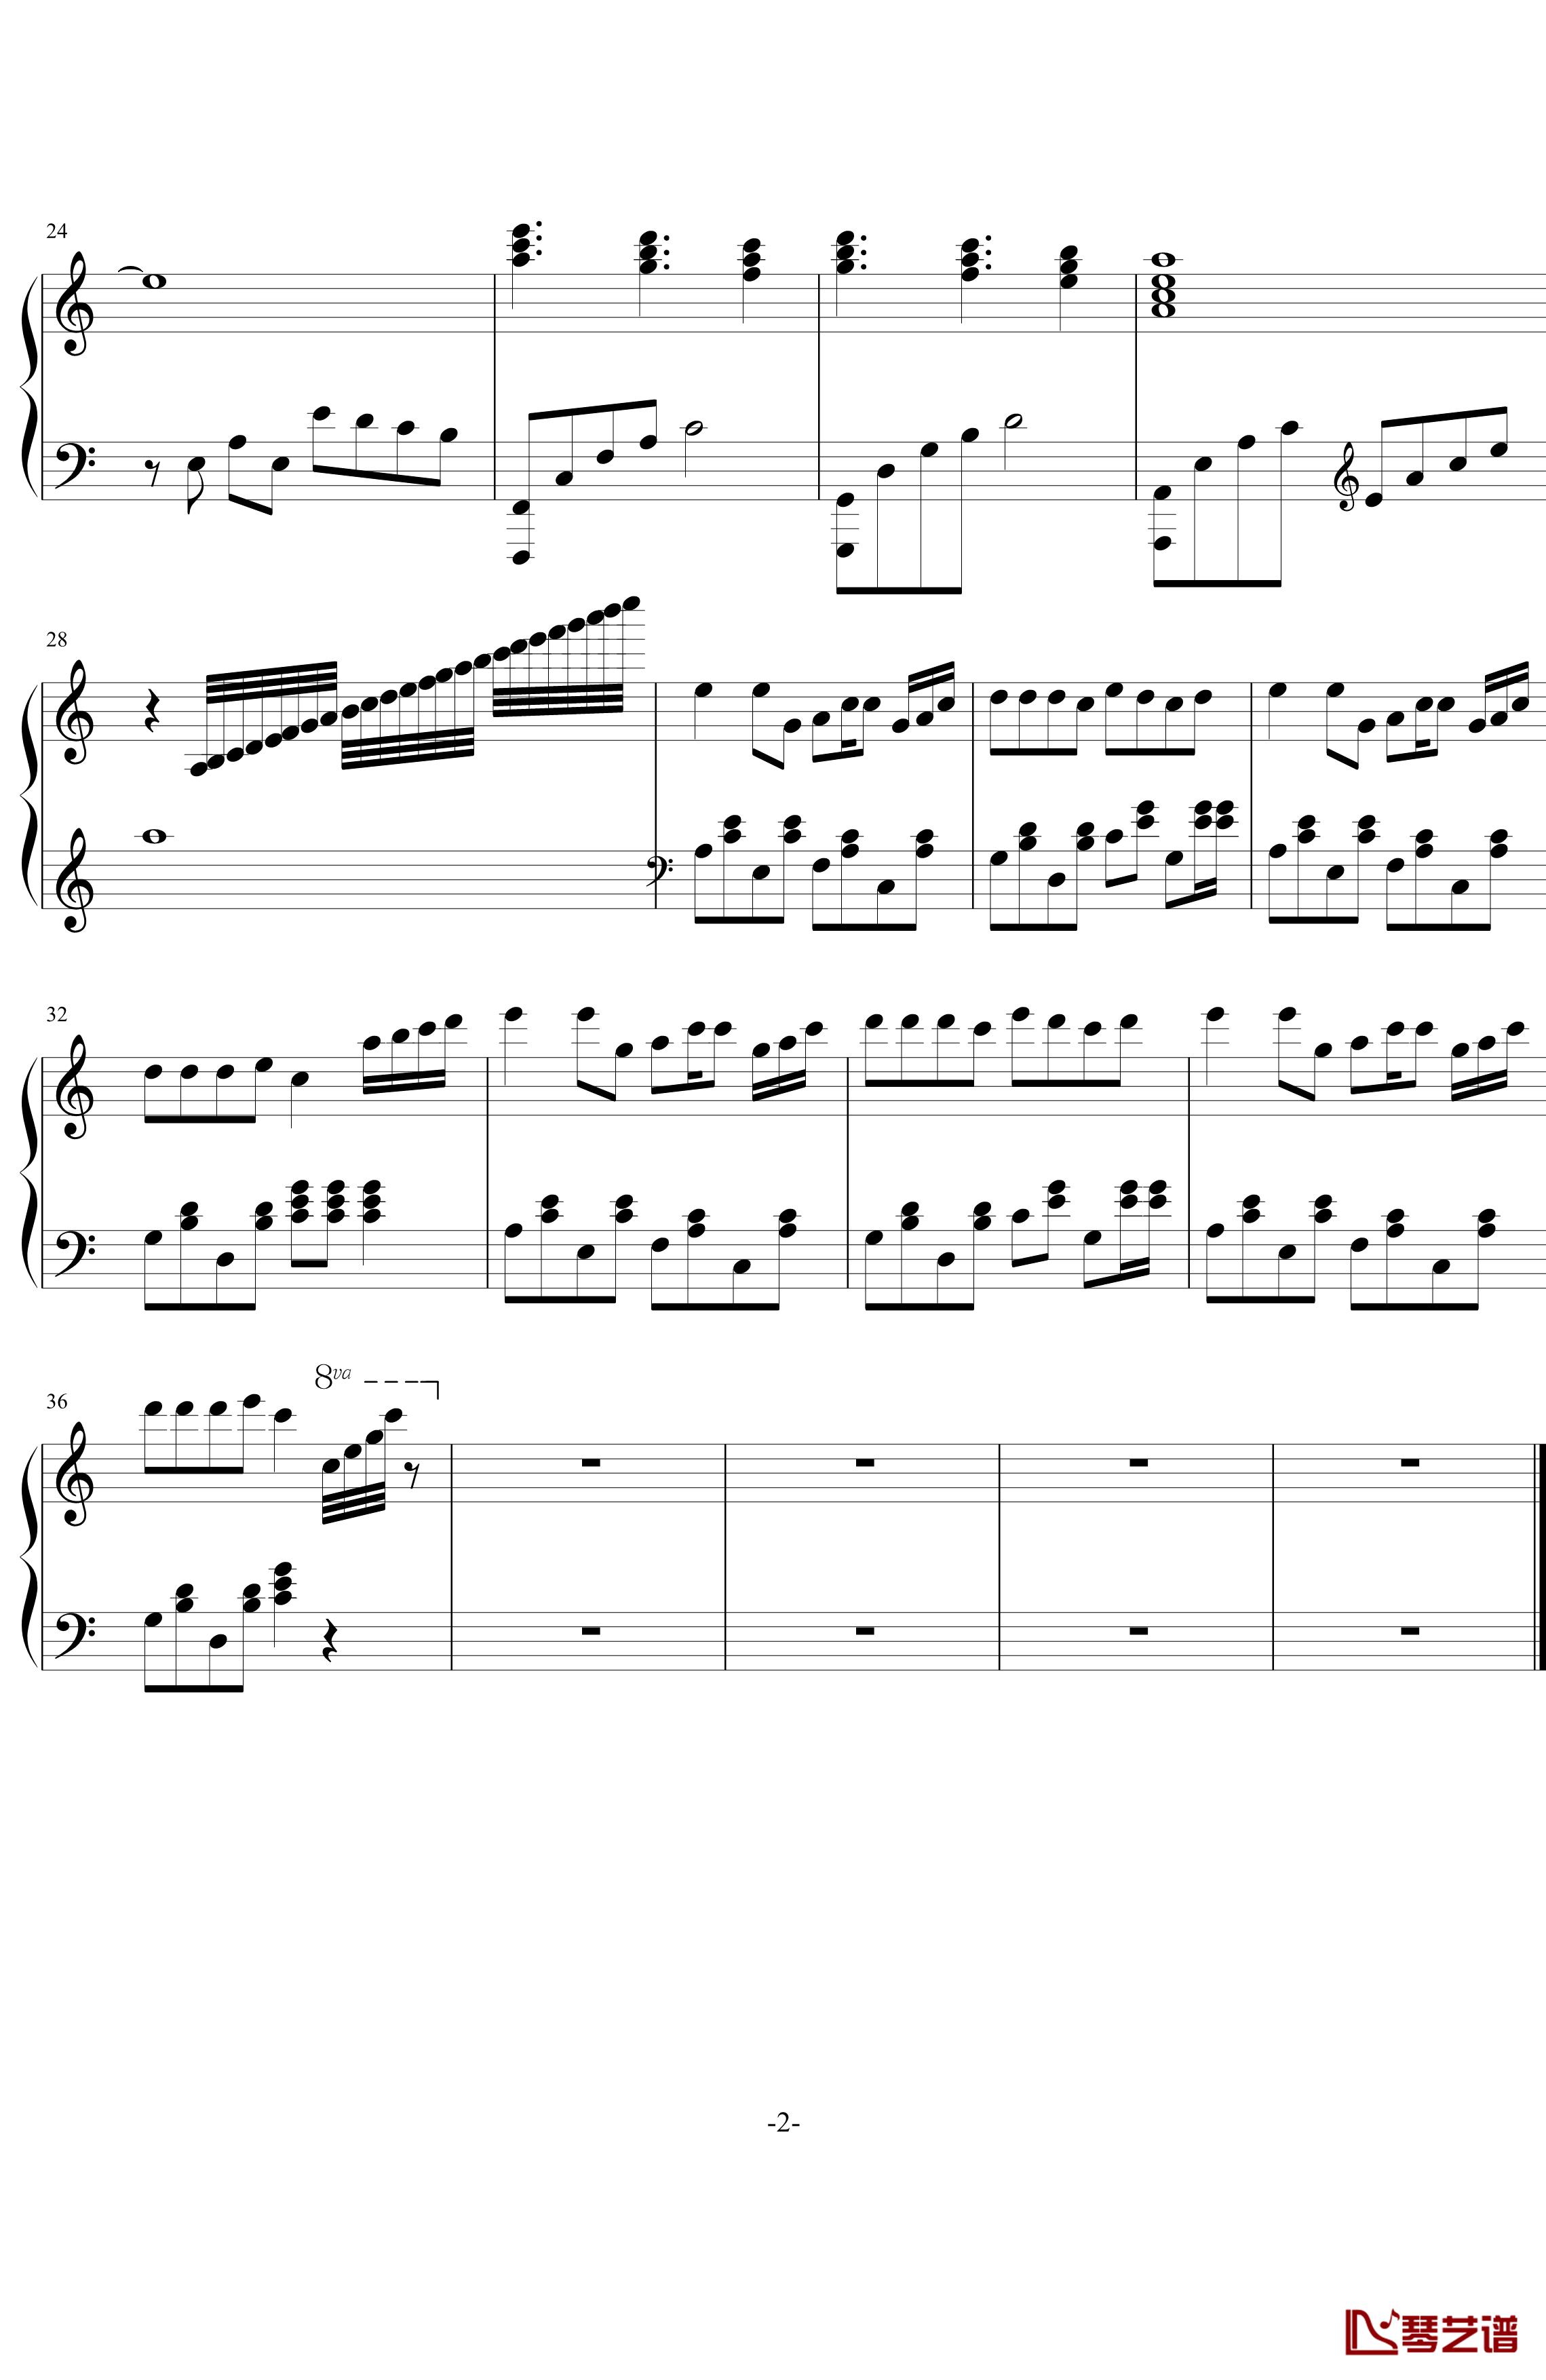 哇之歌钢琴谱-欢乐-lyjai7702